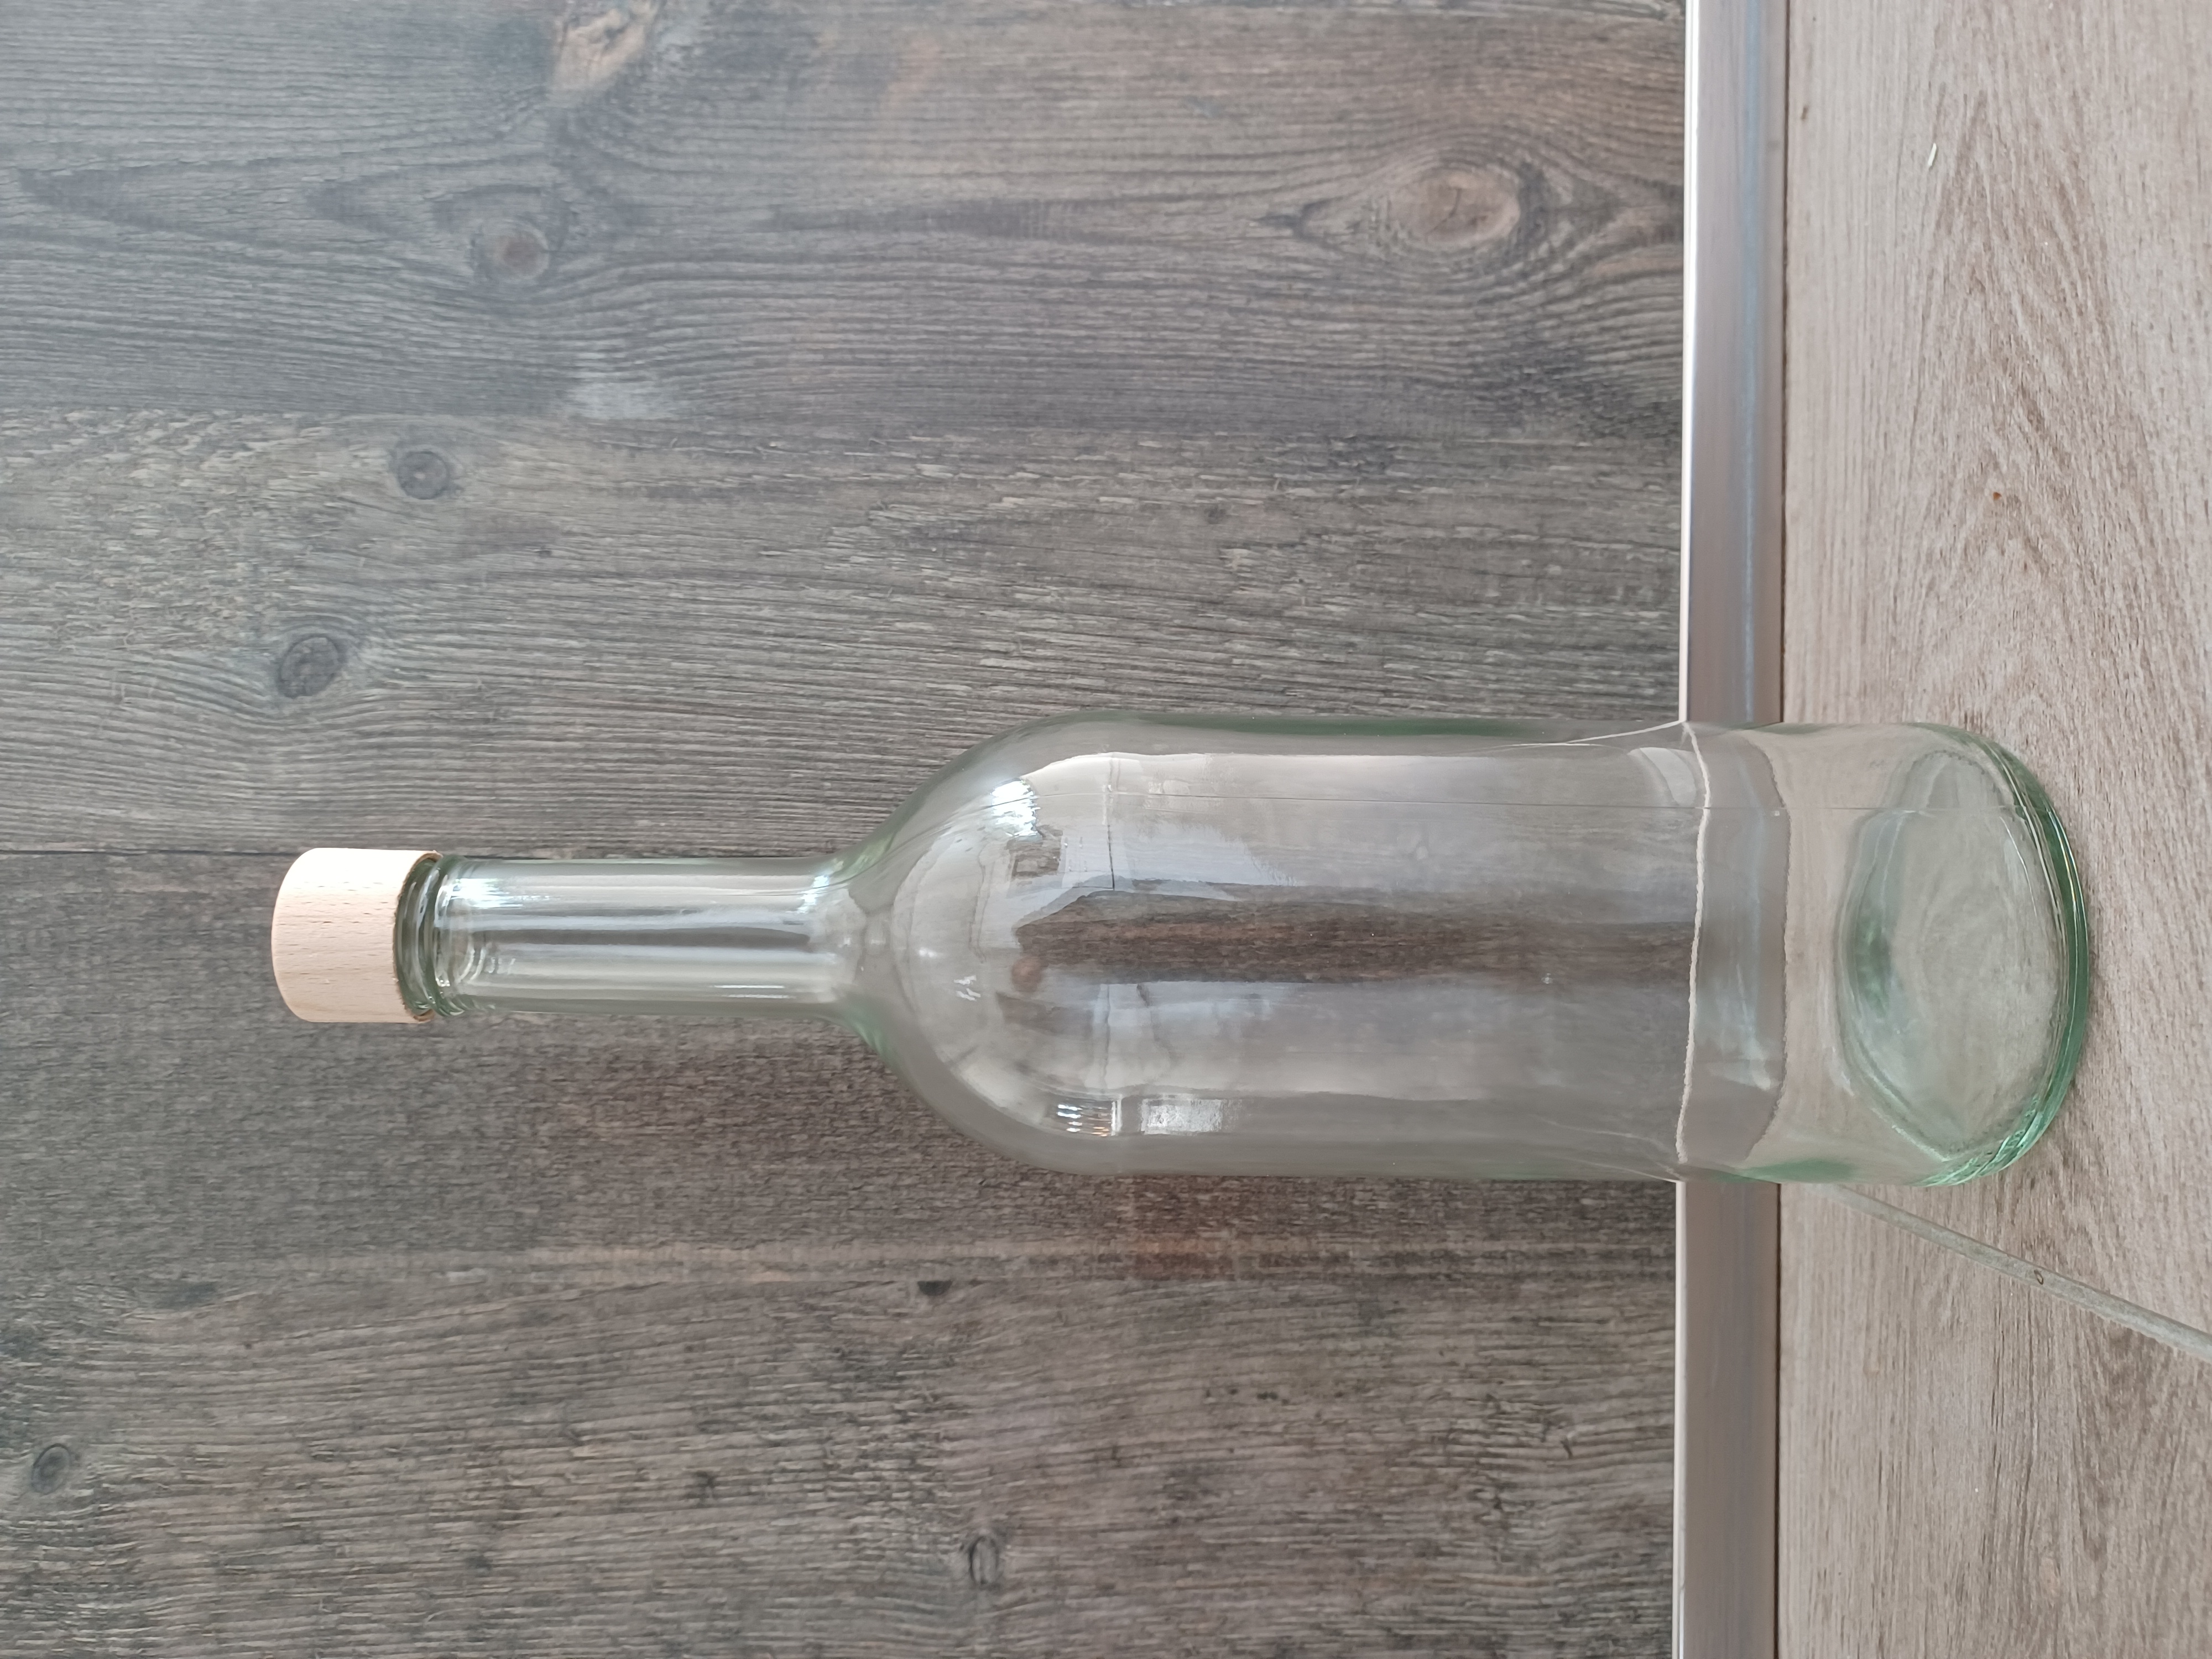 Universalreiniger Aloe Vera in der Glasflasche- Abgabe 100 ml. weise